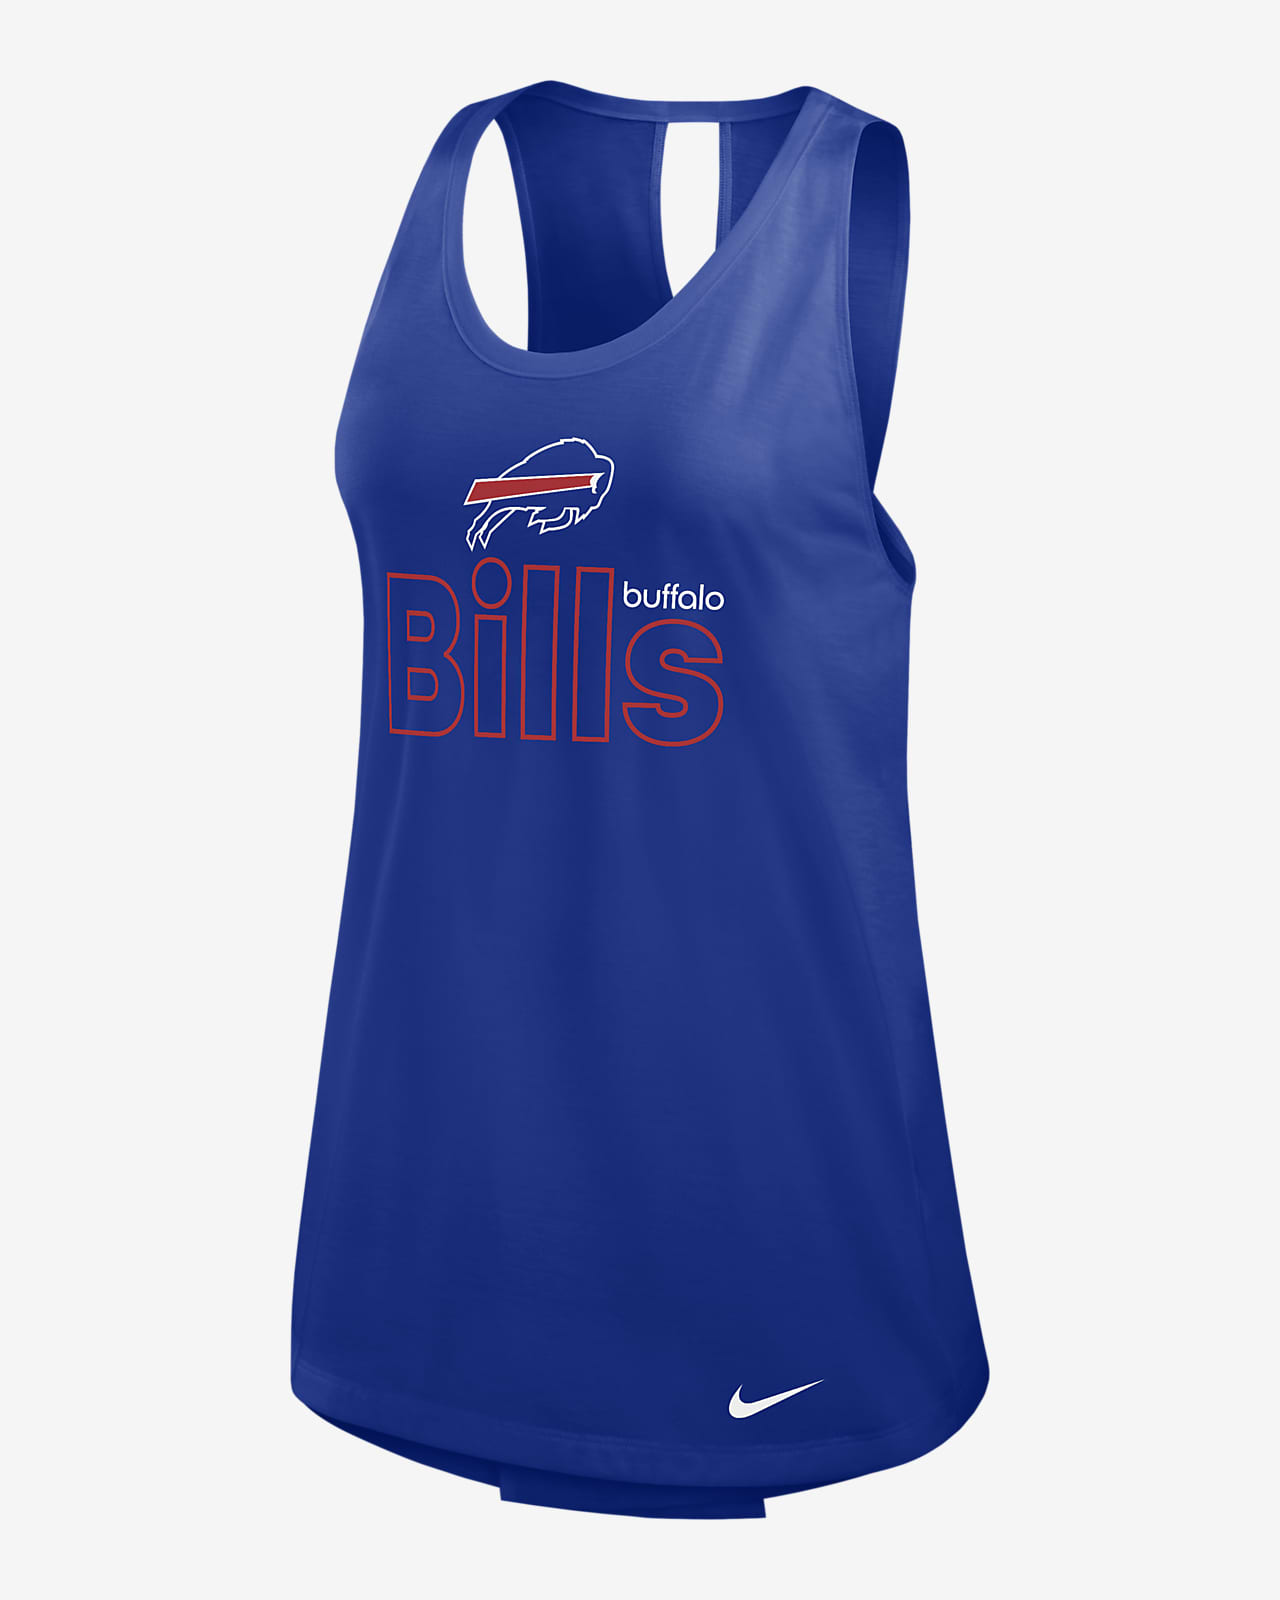 Buffalo Bills Women's Nike Dri-FIT NFL Tank Top